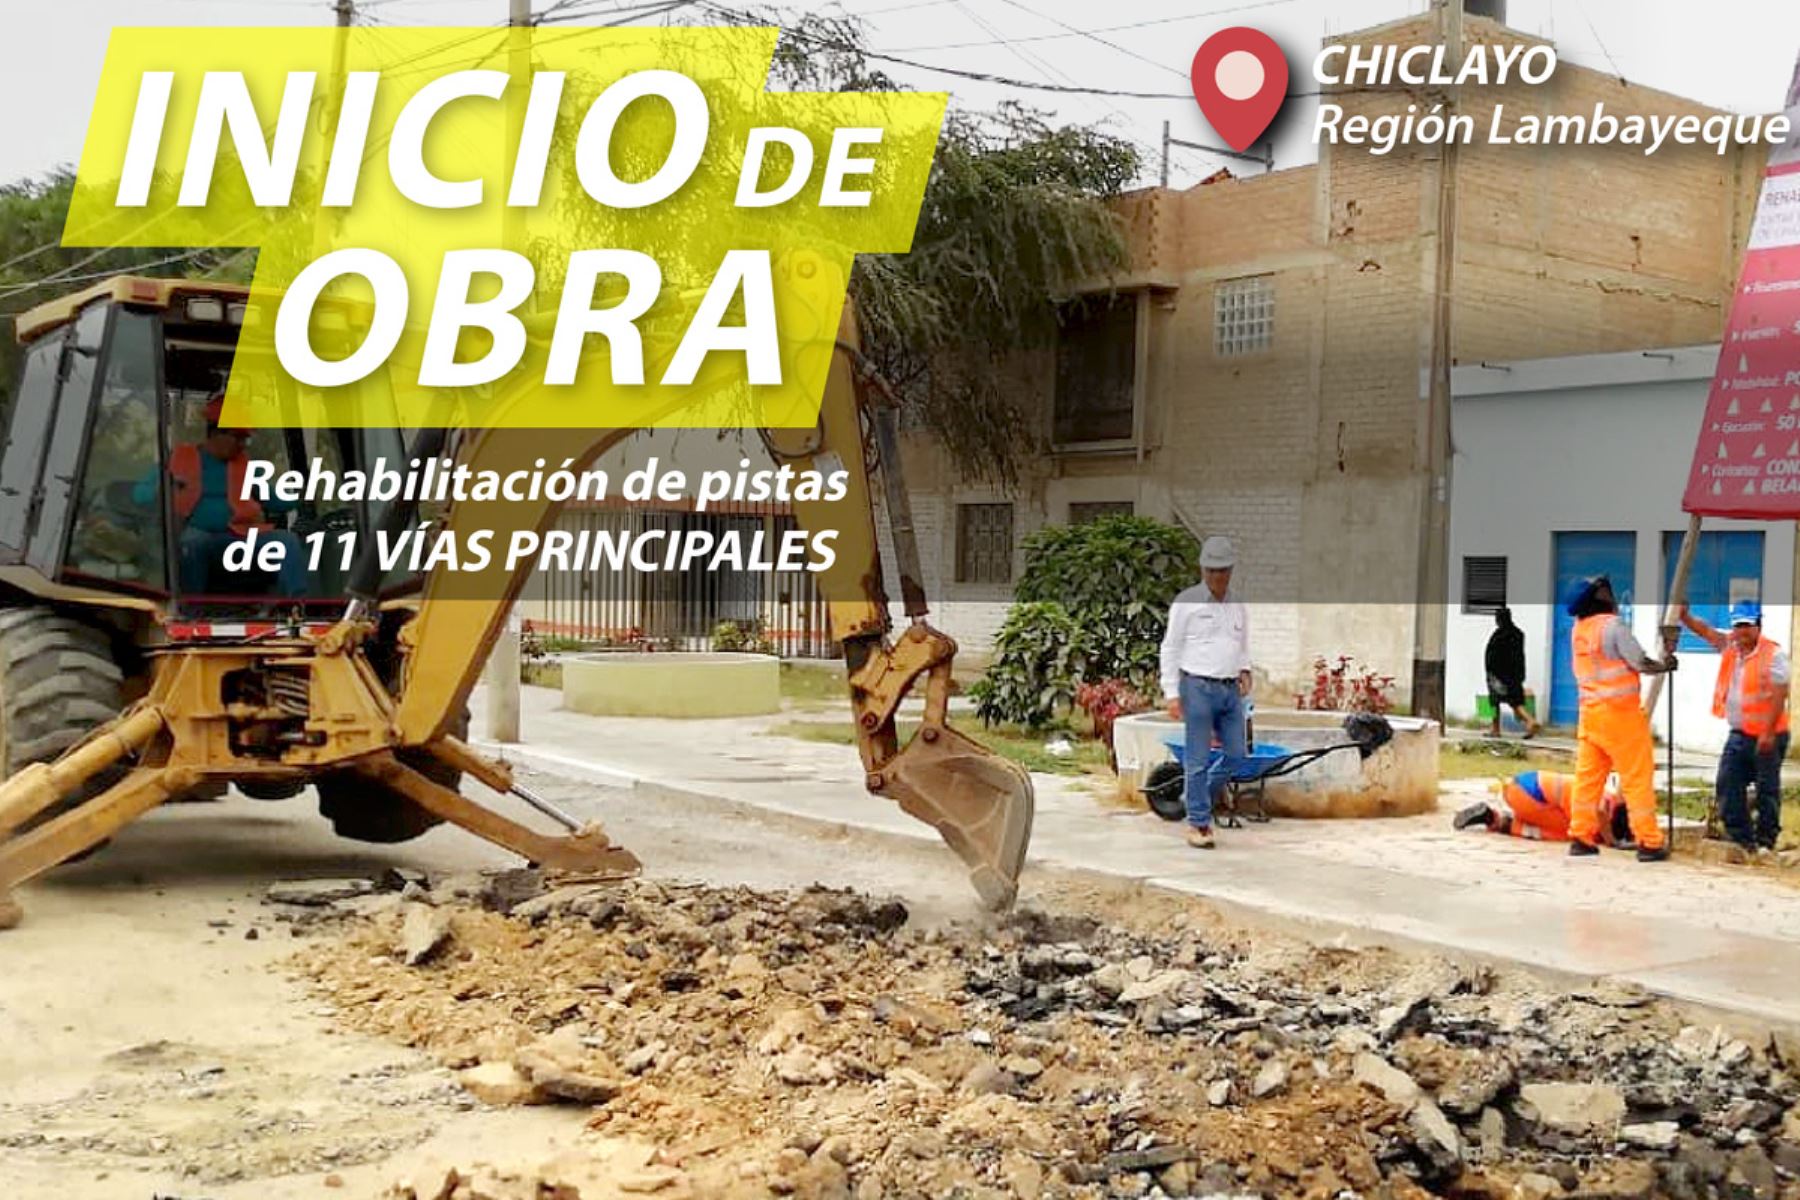 Foto: Chiclayo: inician reconstrucción de pistas y veredas afectadas por El Niño Costero